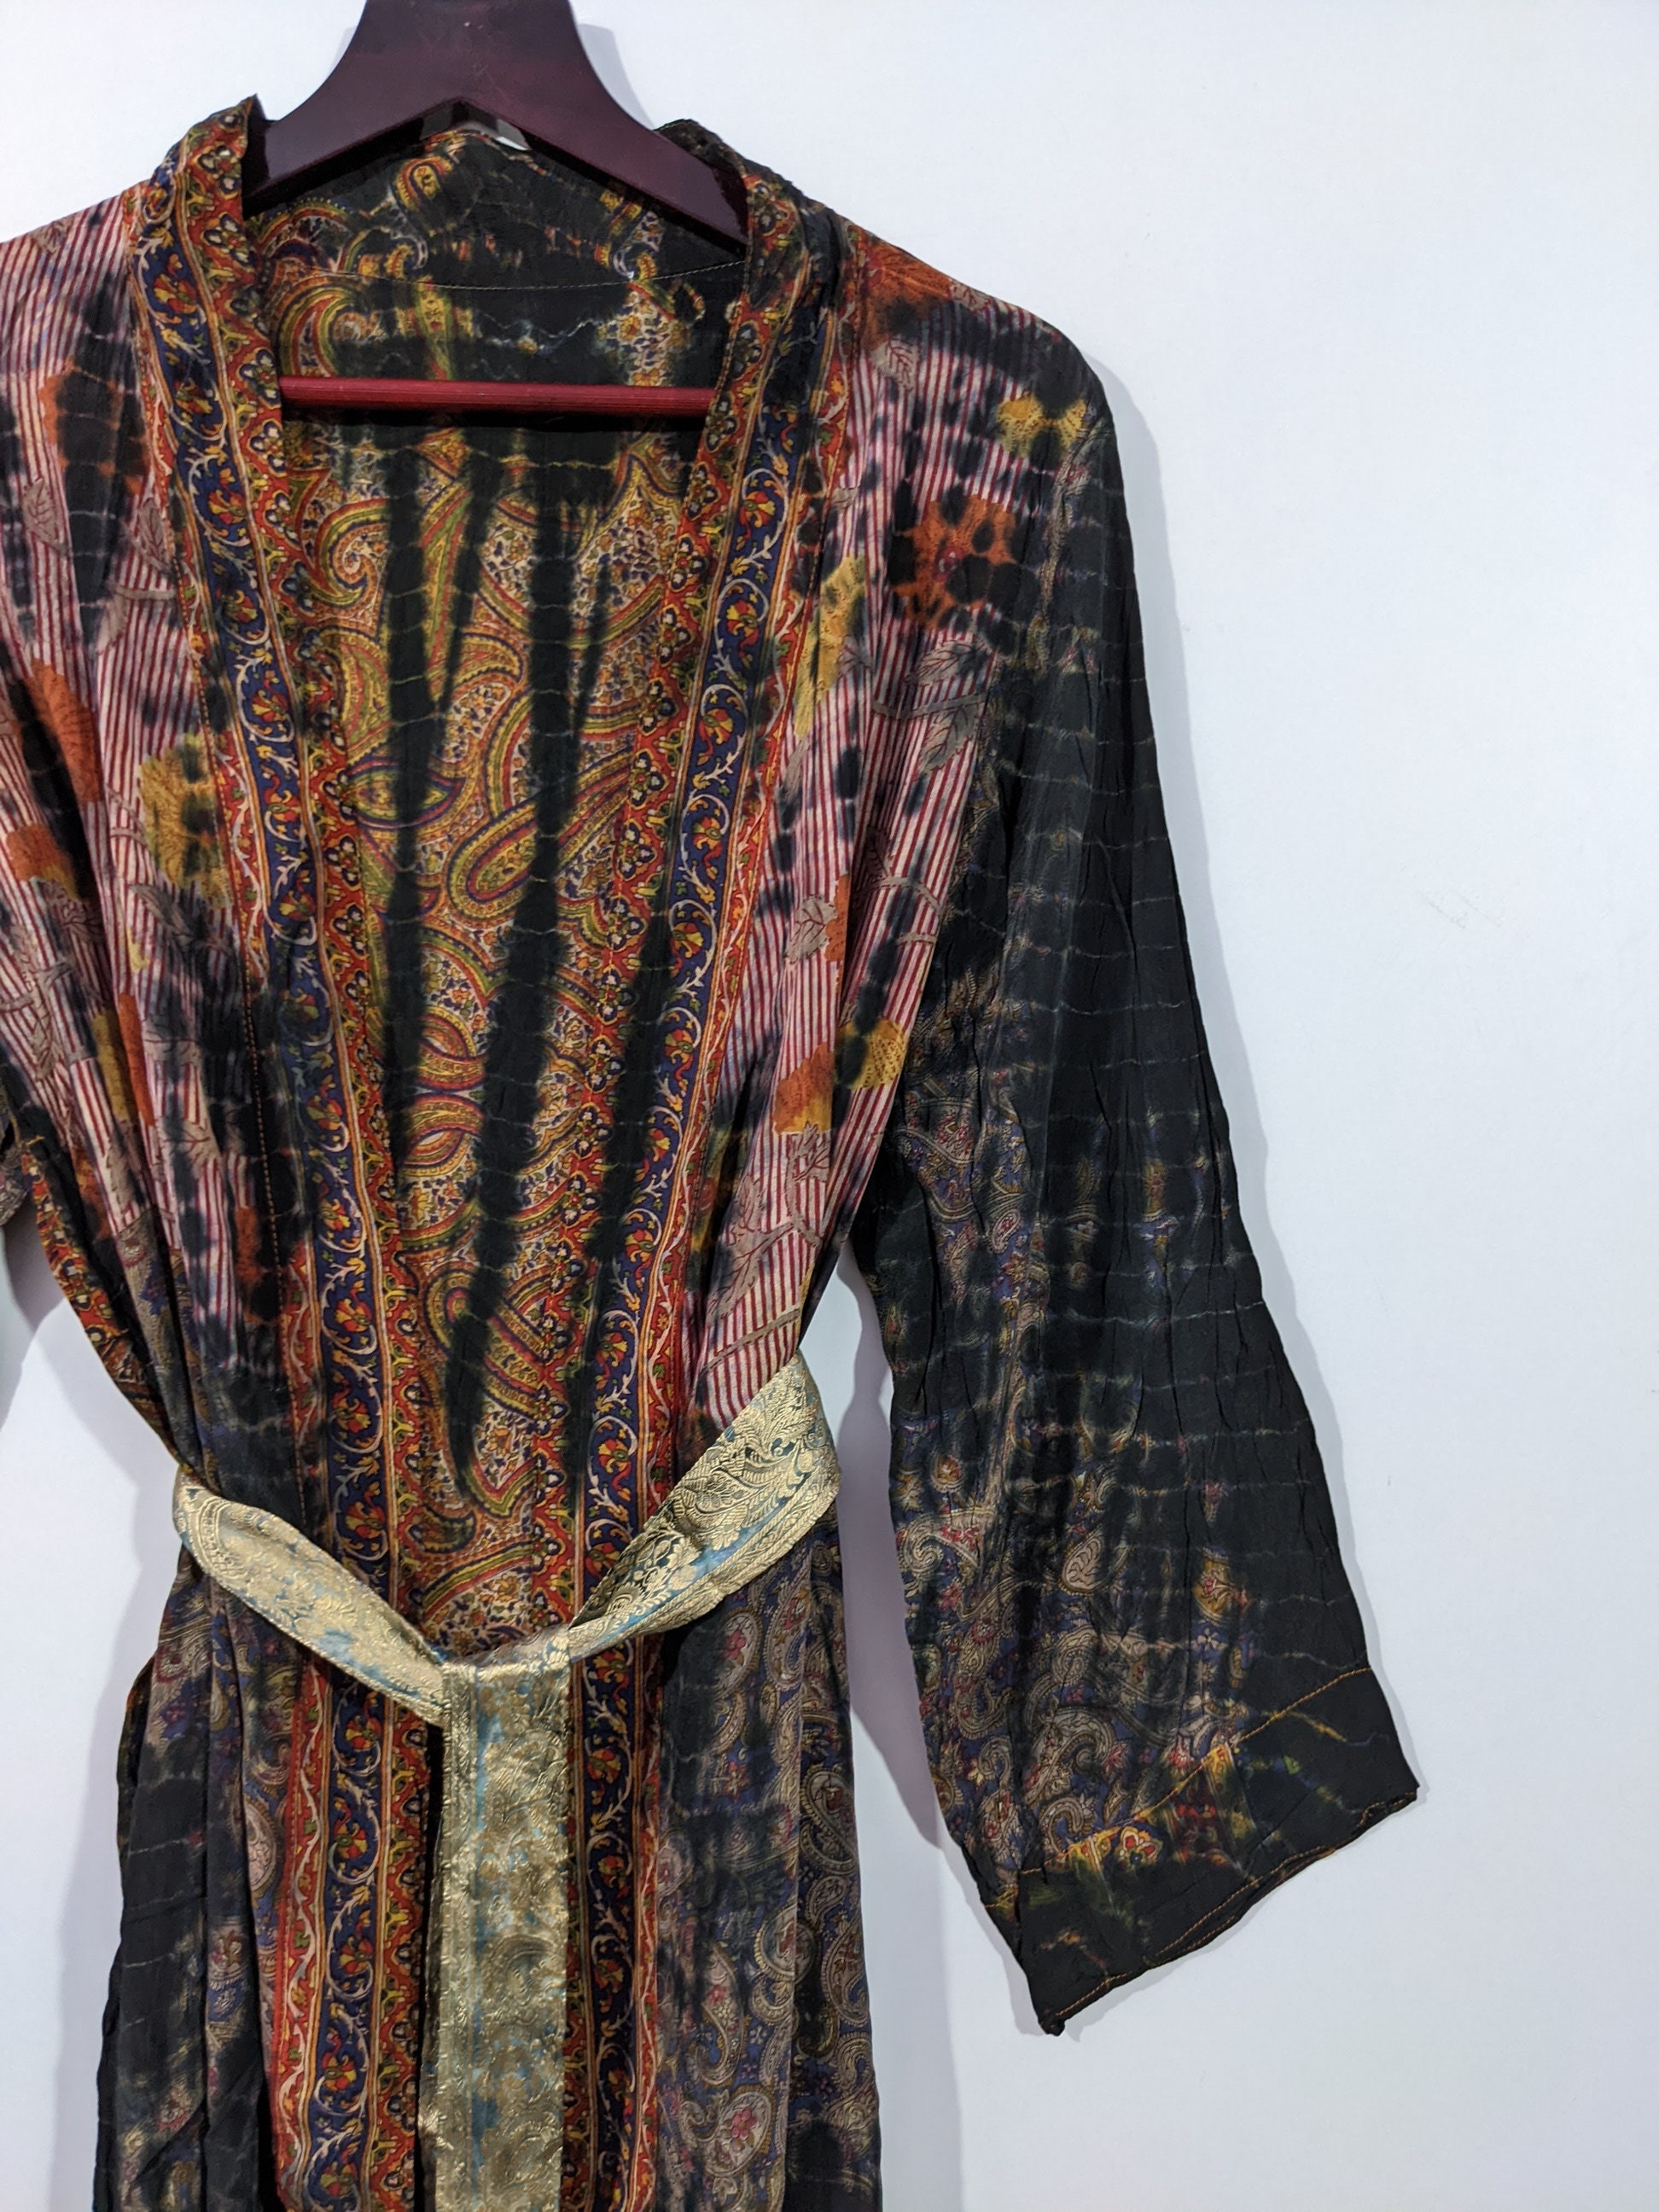 Indian Tie Dye Sari Kimono Batik Dye Robe Sari Fabric Kimono - Etsy